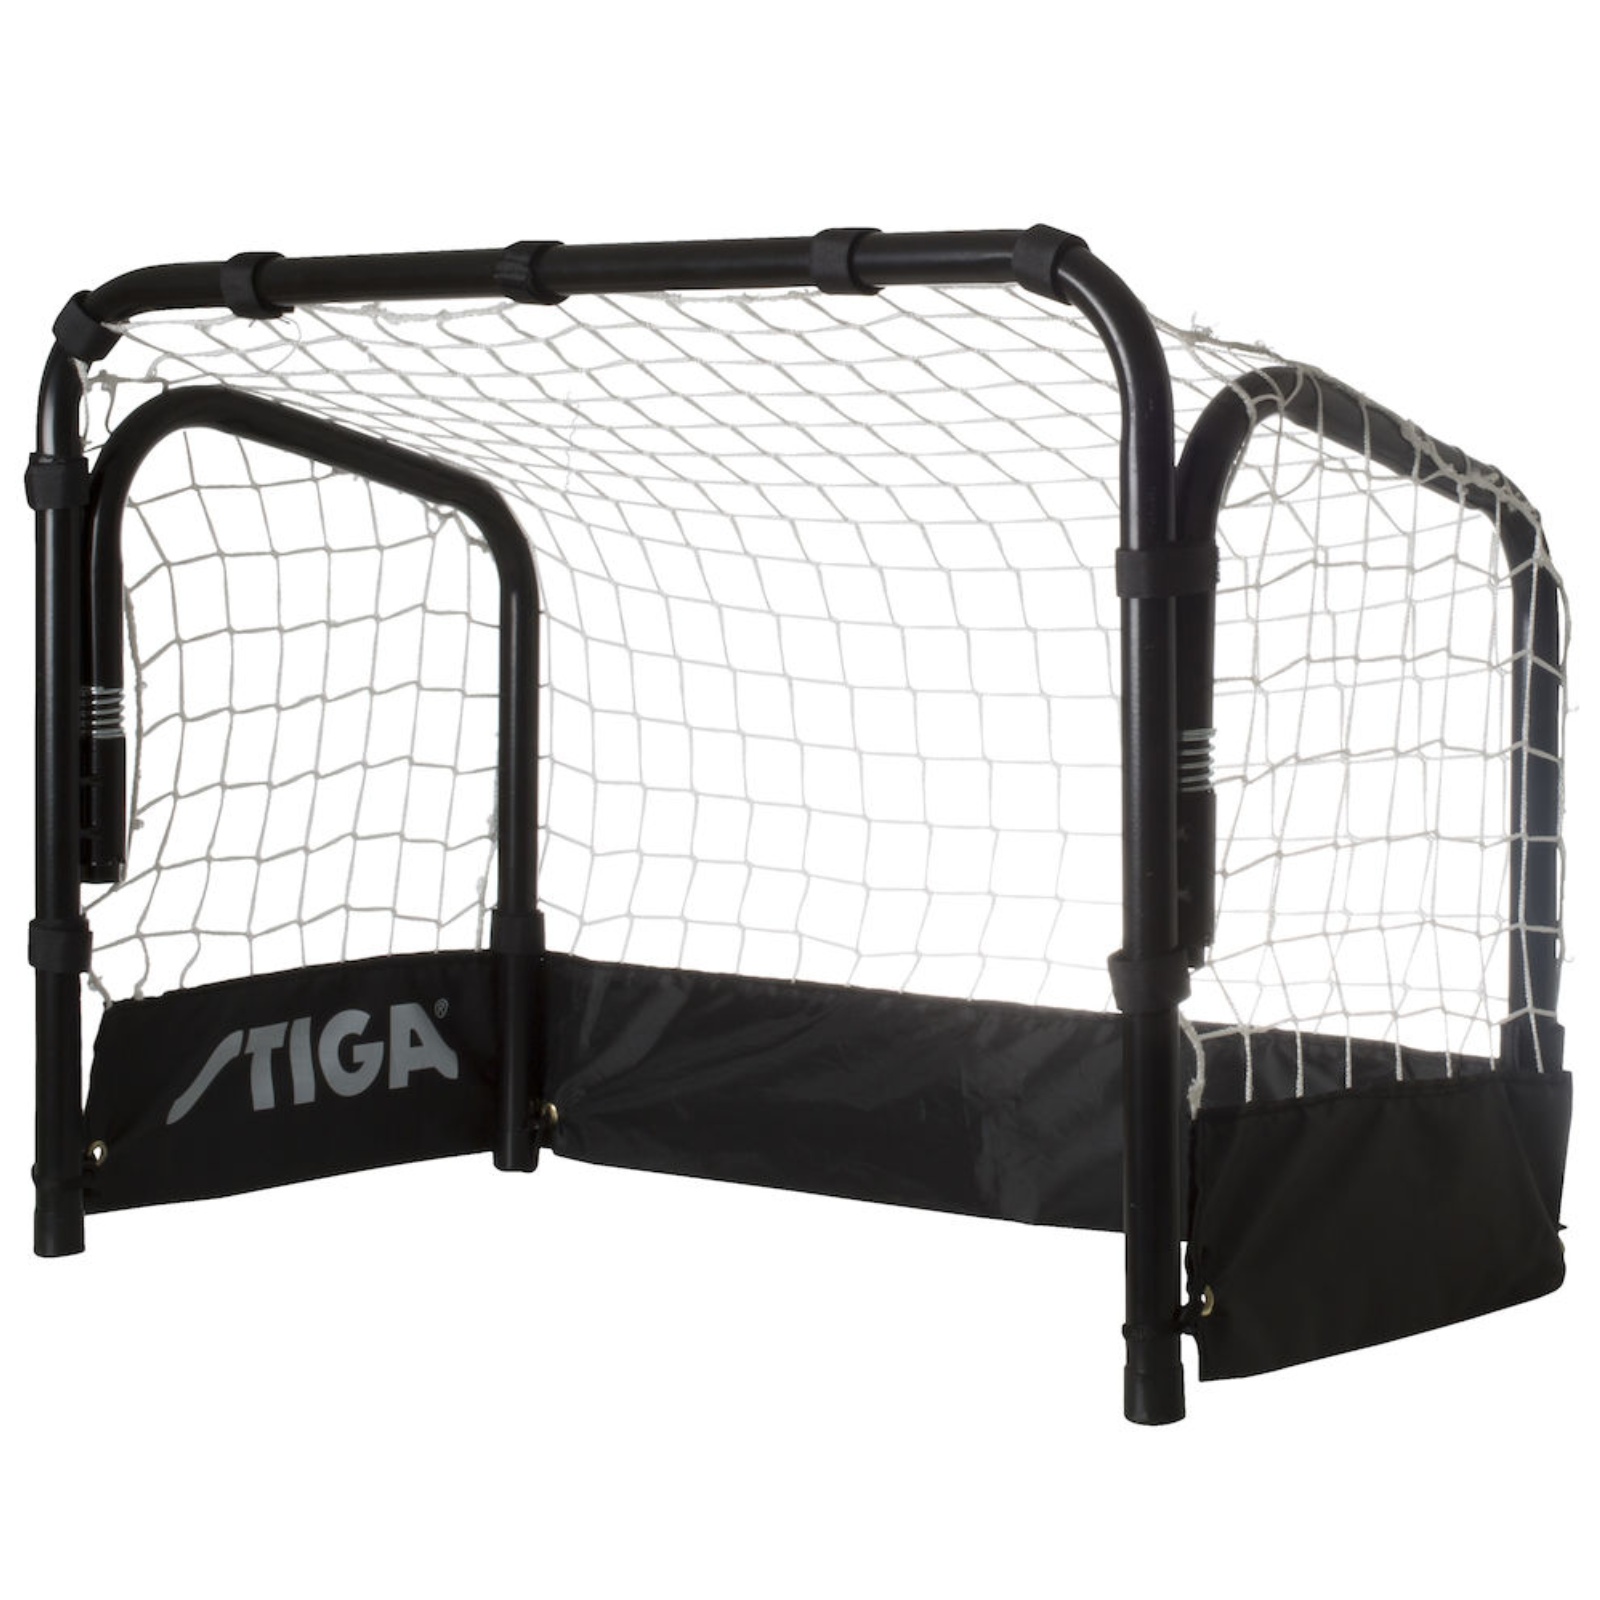 STIGA Goal Court 62 × 46 × 35 cm